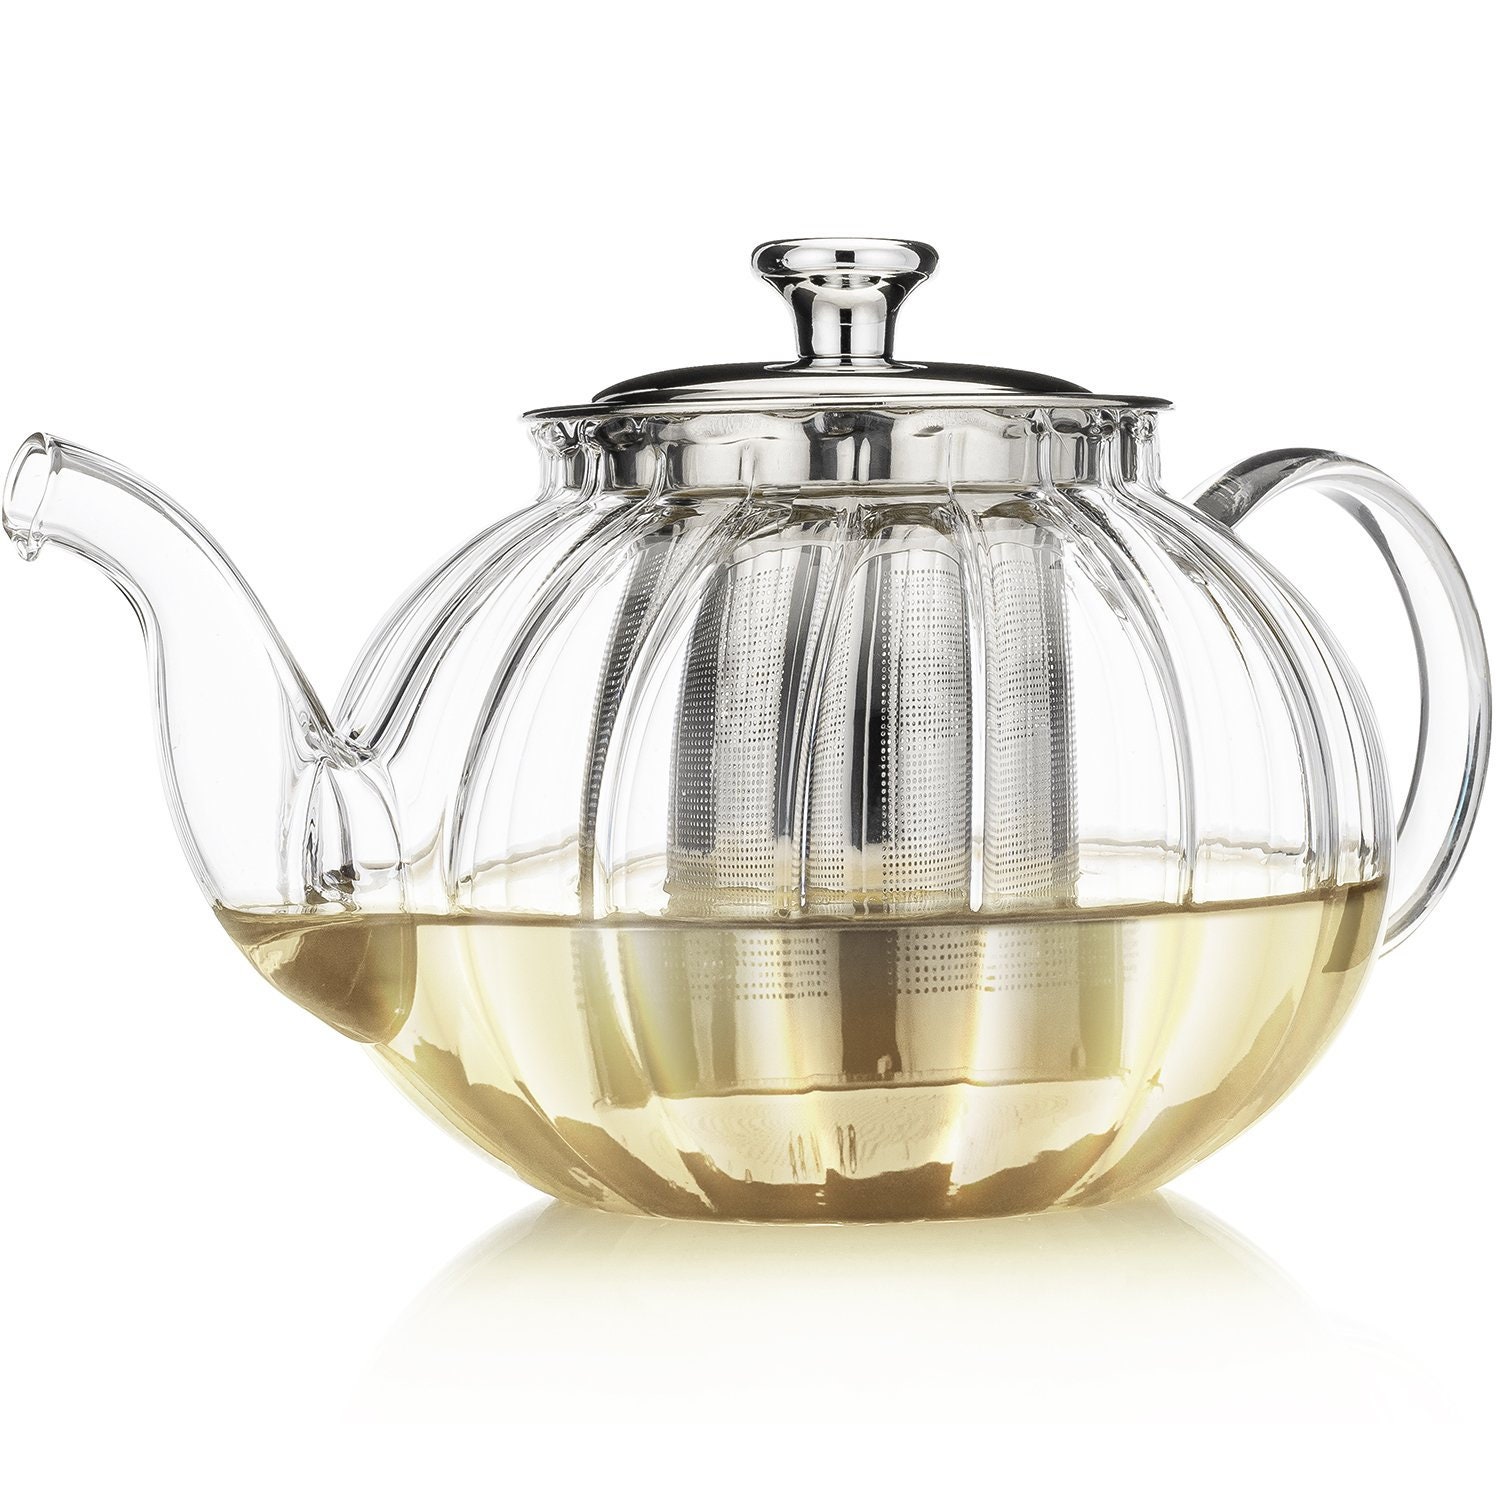 YOLIFE Tea Pot with Infuser for Loose Leaf Tea, 42oz Vintage Ceramic Teapot  with Floral and Gold Leaf Design (Rose)